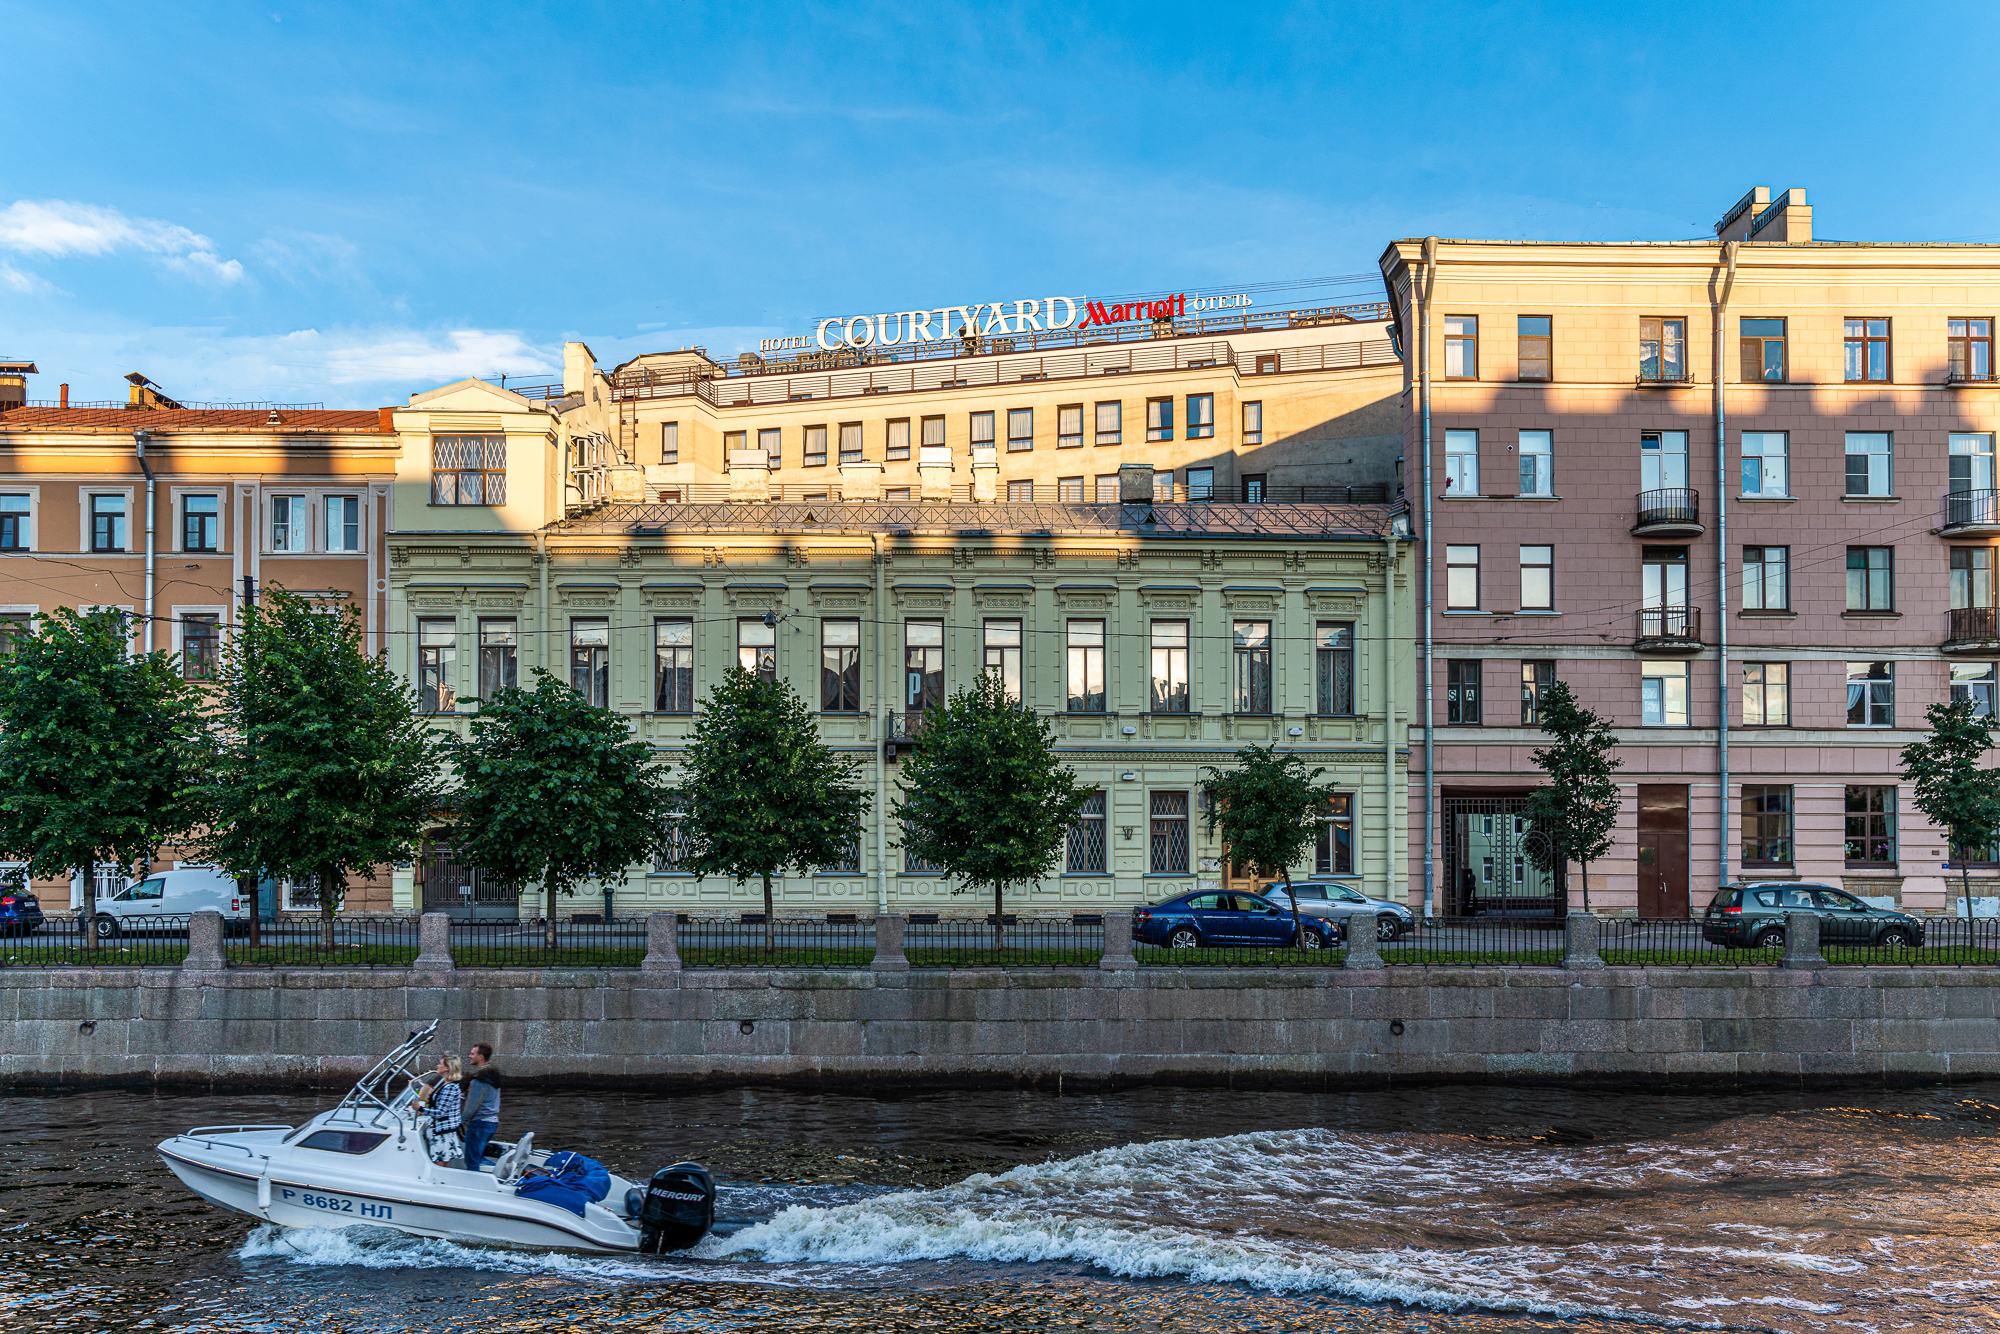 Отели санкт петербурга в центре